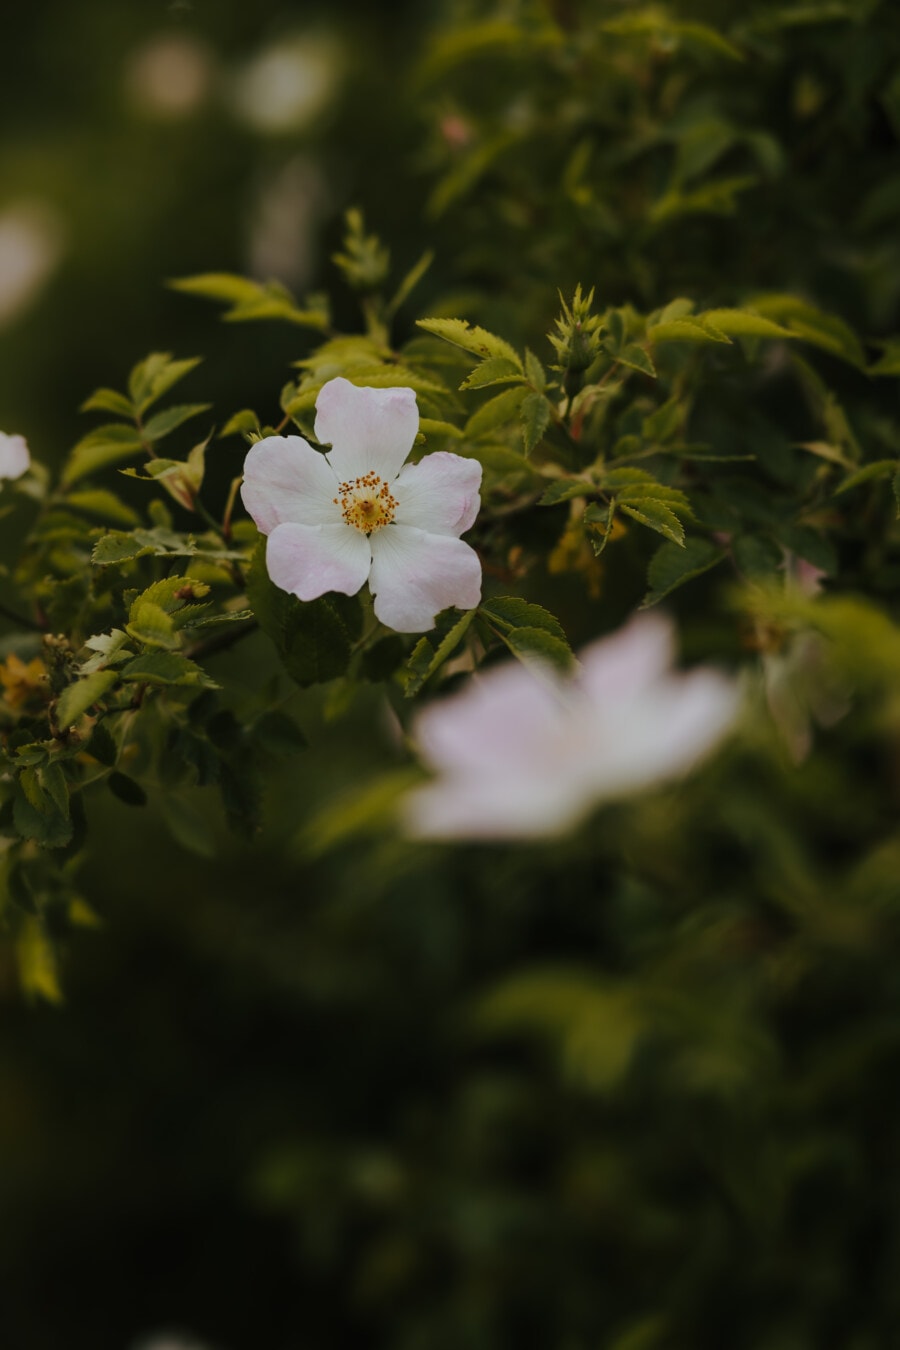 αγριολούλουδο, τριαντάφυλλο, λευκό λουλούδι, ανθοφορίας, βοτανική, Οργανισμός, λουλούδι, γλυπτική, φύση, πέταλο